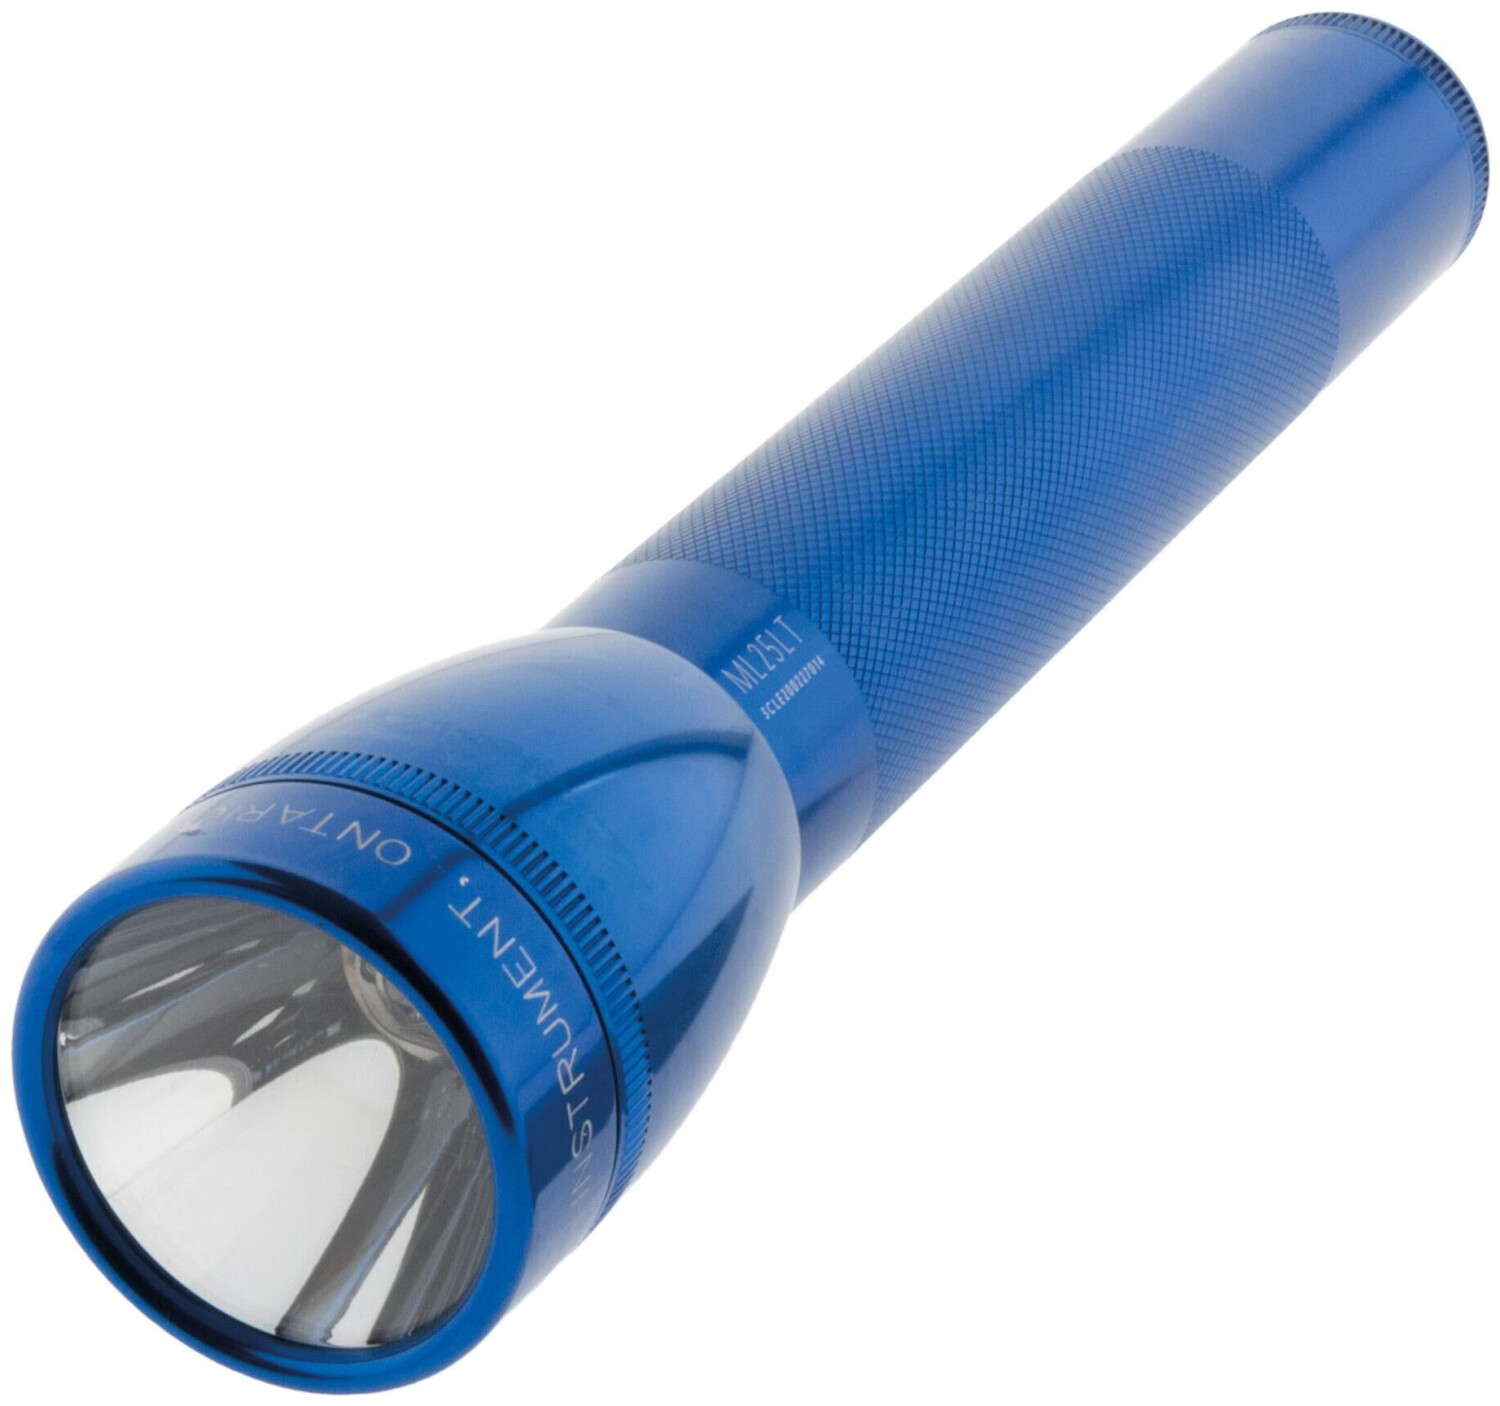 Maglite ML25LT LED bleu au meilleur prix sur